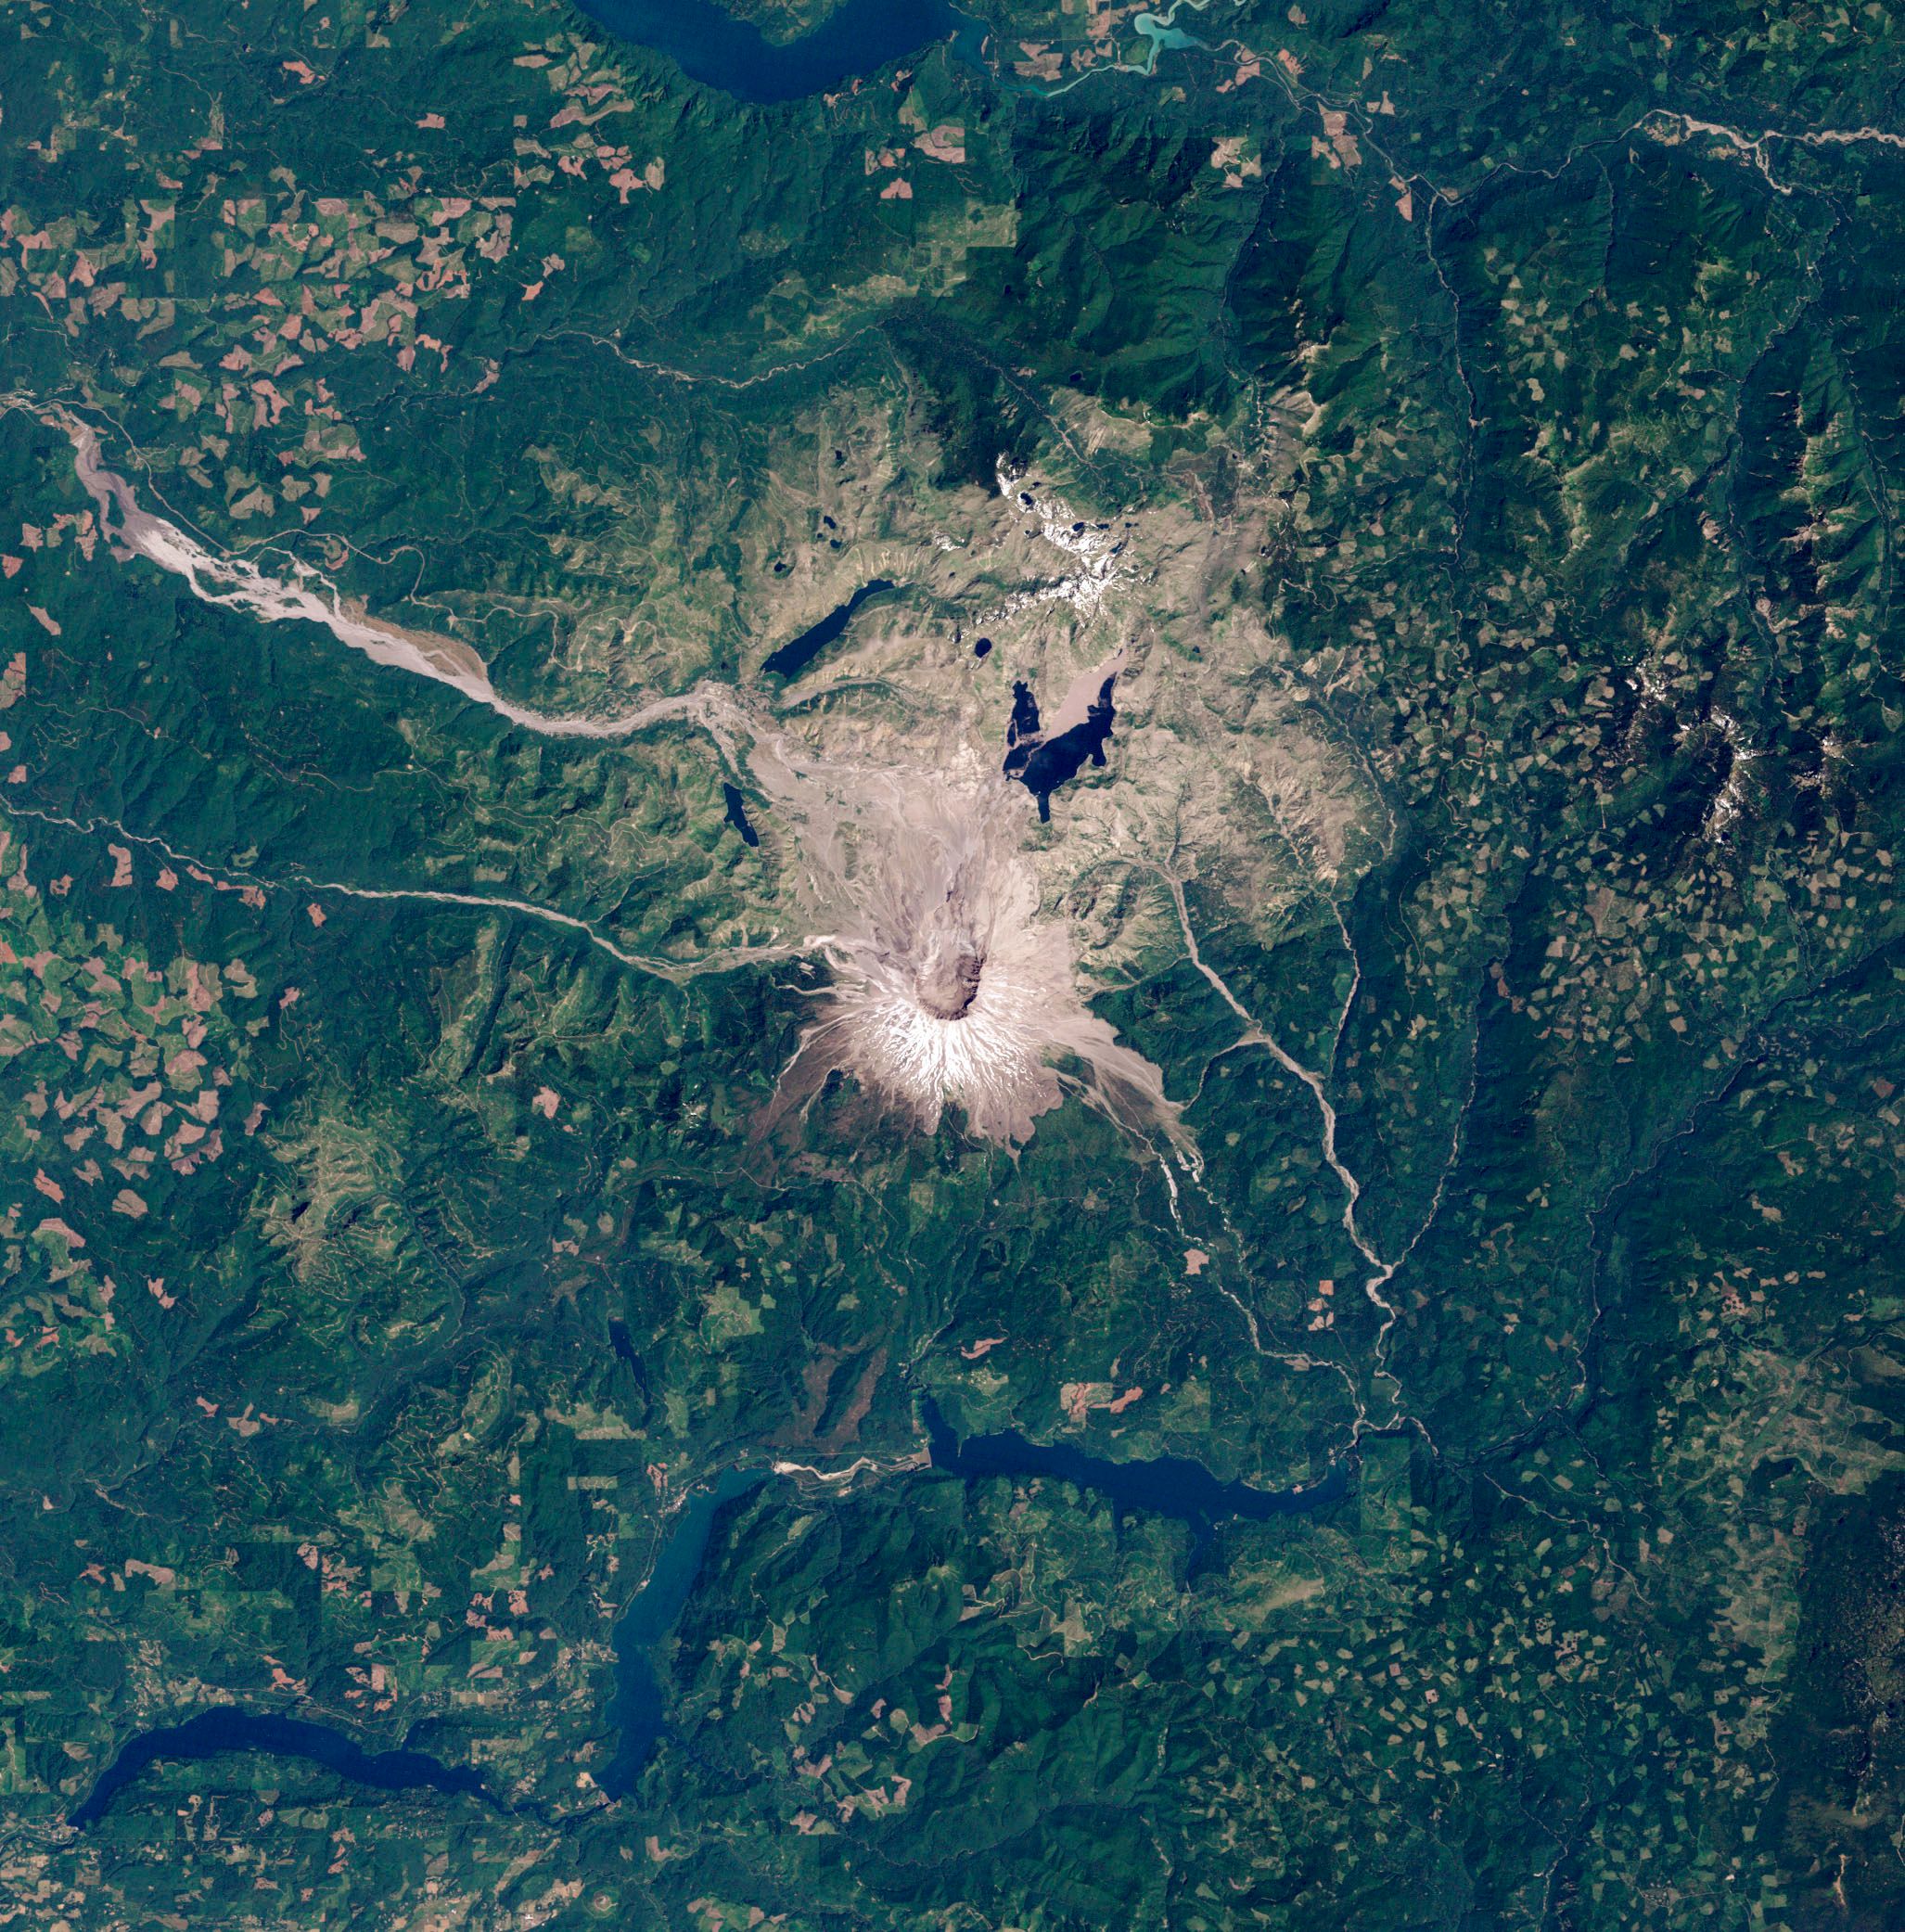 Der Krater des Mount St. Helens ist weiß. Er liegt mittig in der Satelliten-Aufnahme, die größtenteils eine grüne Landschaft zeigt.